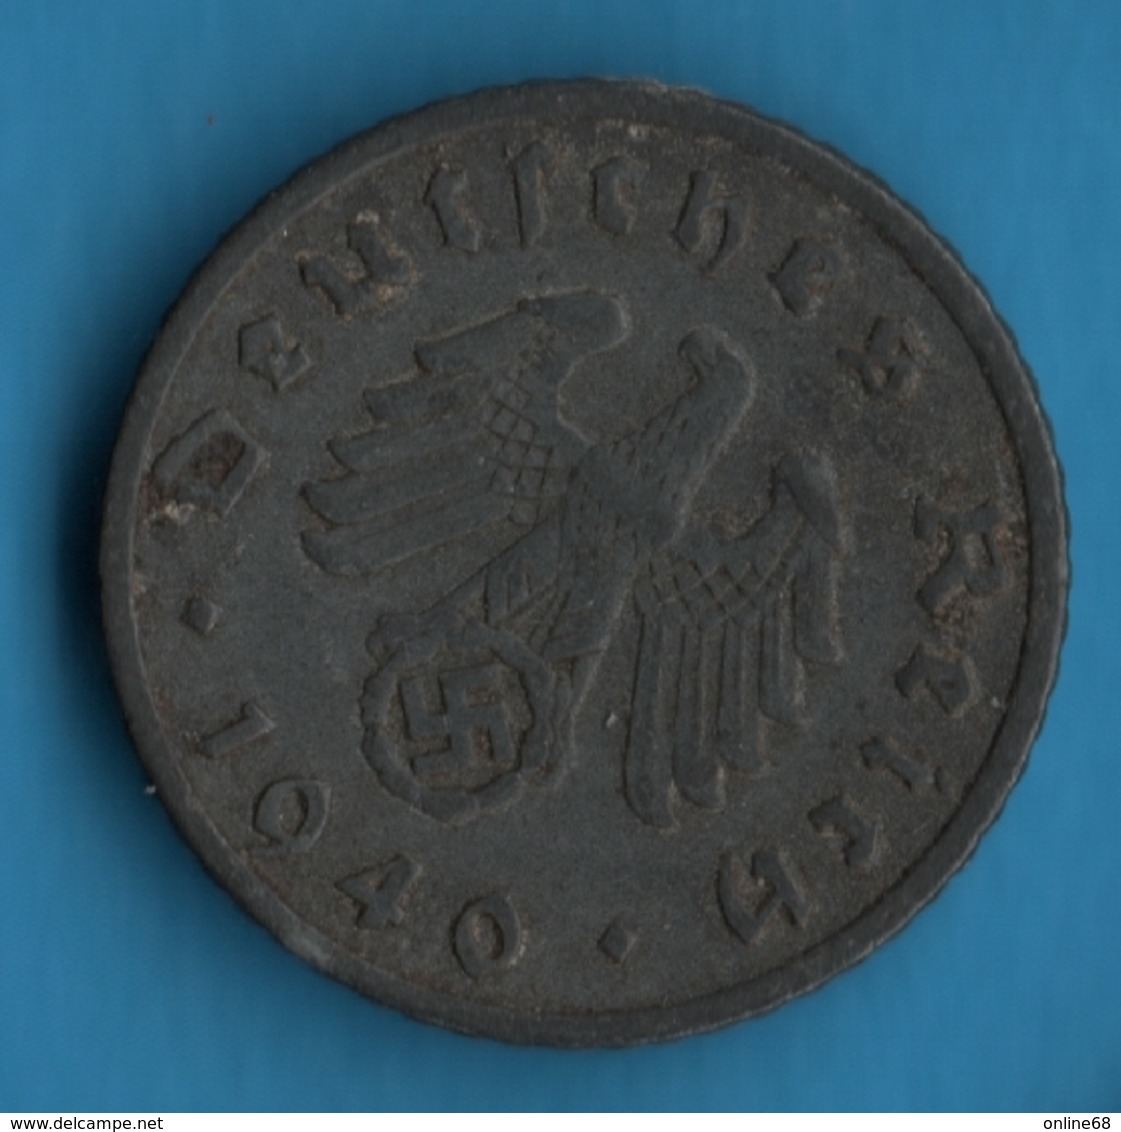 DEUTSCHES REICH 5 REICHSPFENNIG 1940 F  KM# 100 Svastika - 5 Reichspfennig